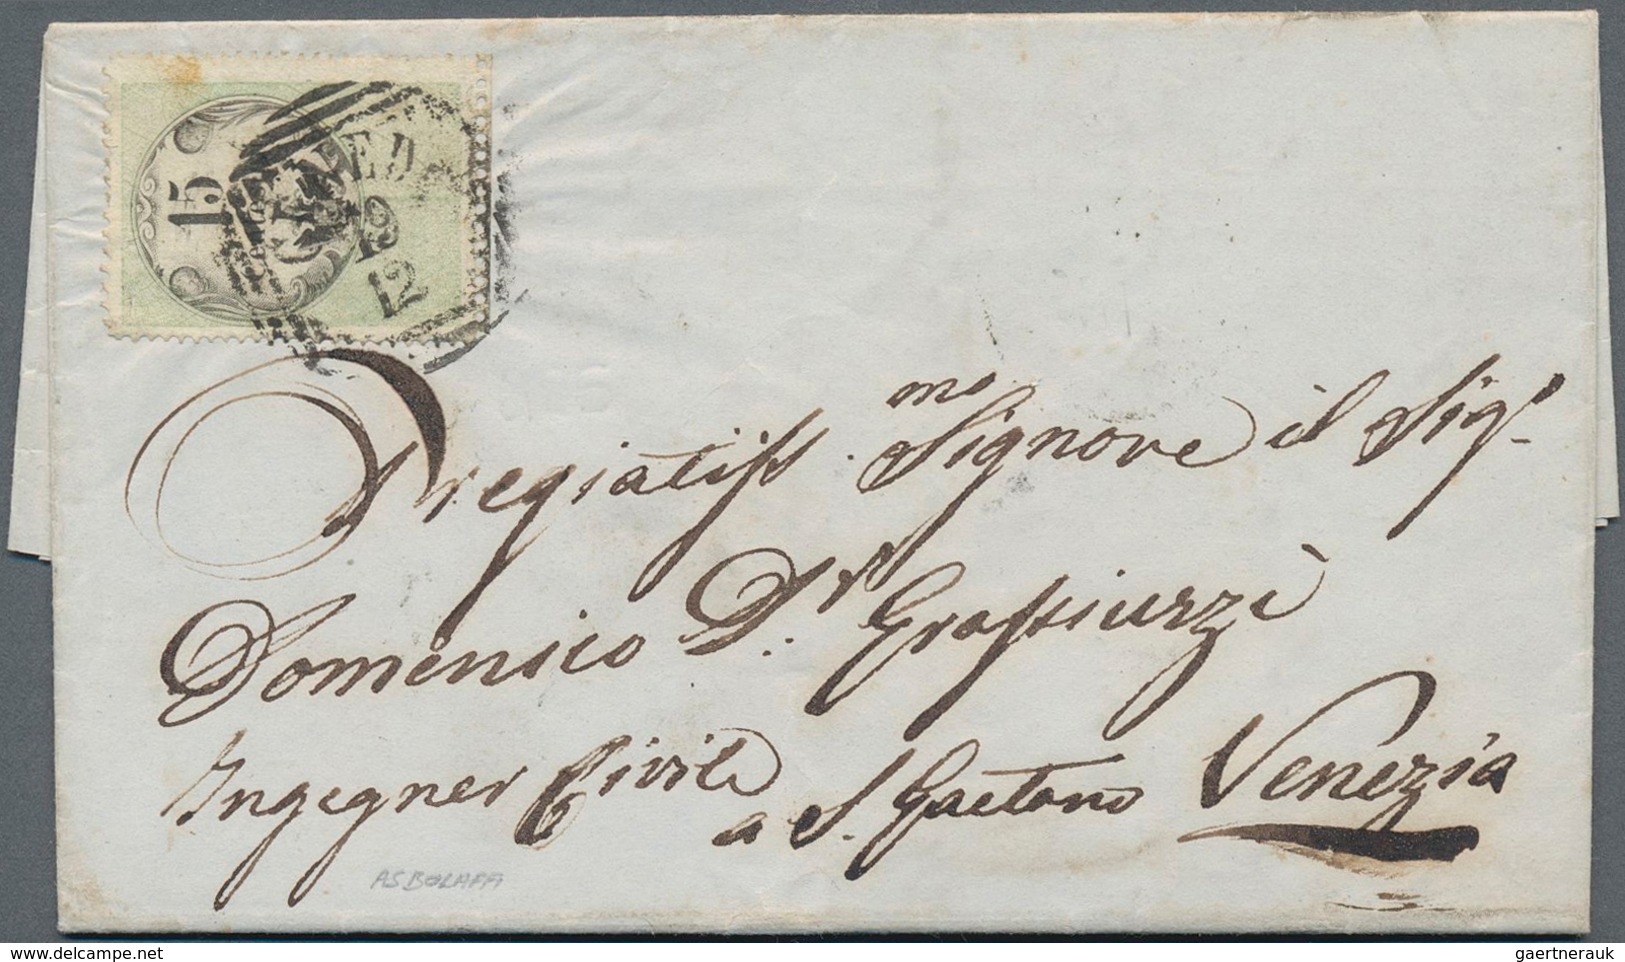 Österreich - Lombardei Und Venetien - Stempelmarken: 1855, 15 Cent. Buchdruck, übergehend Entwertet - Lombardo-Vénétie